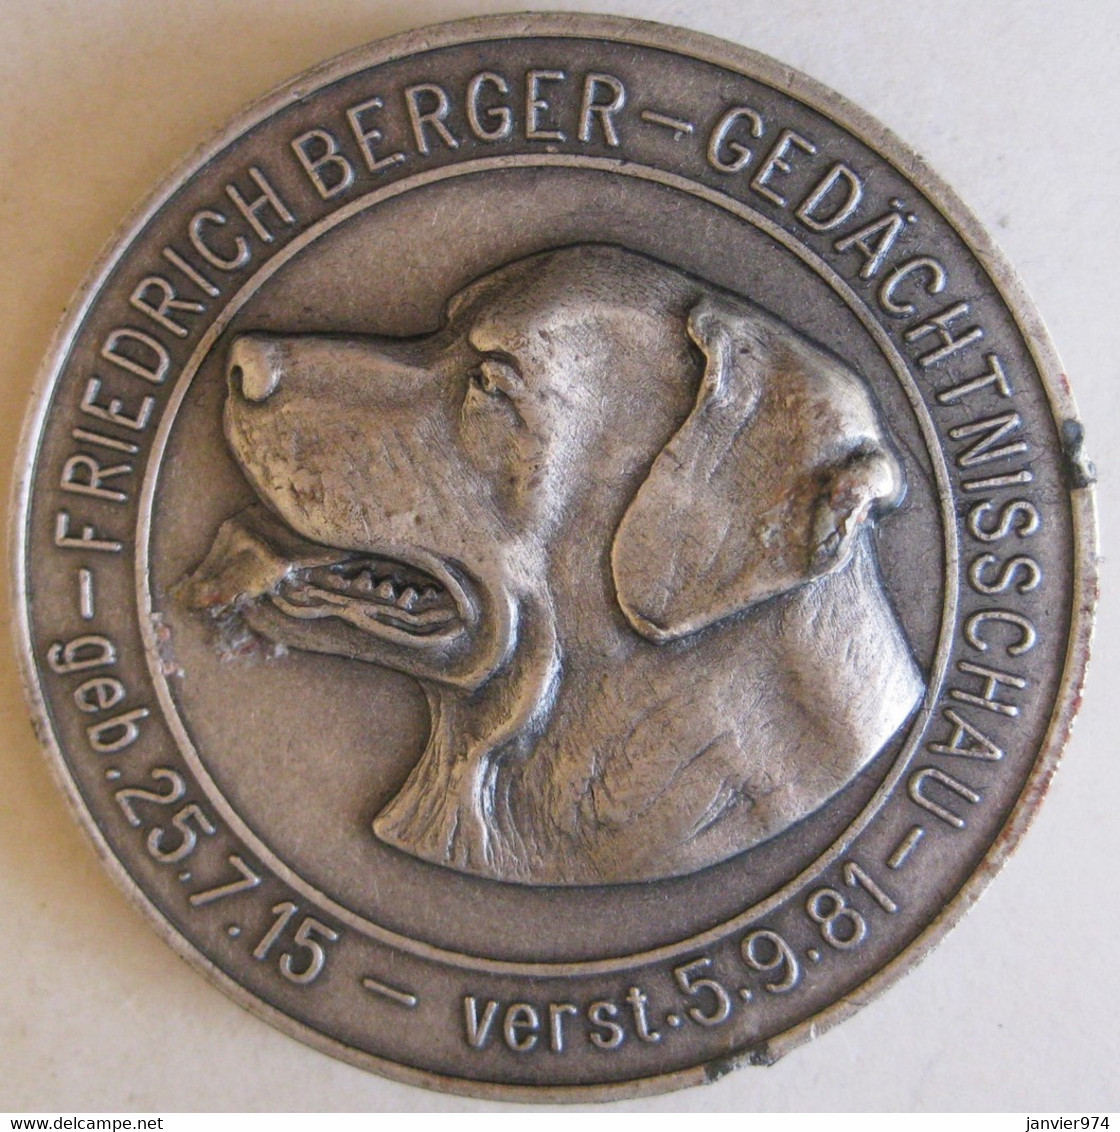 Médaille En Aluminium Friedrich Berger Gedächtnisschau 1981 . Hauptzuchtwart - ADRK . Chien - Firma's